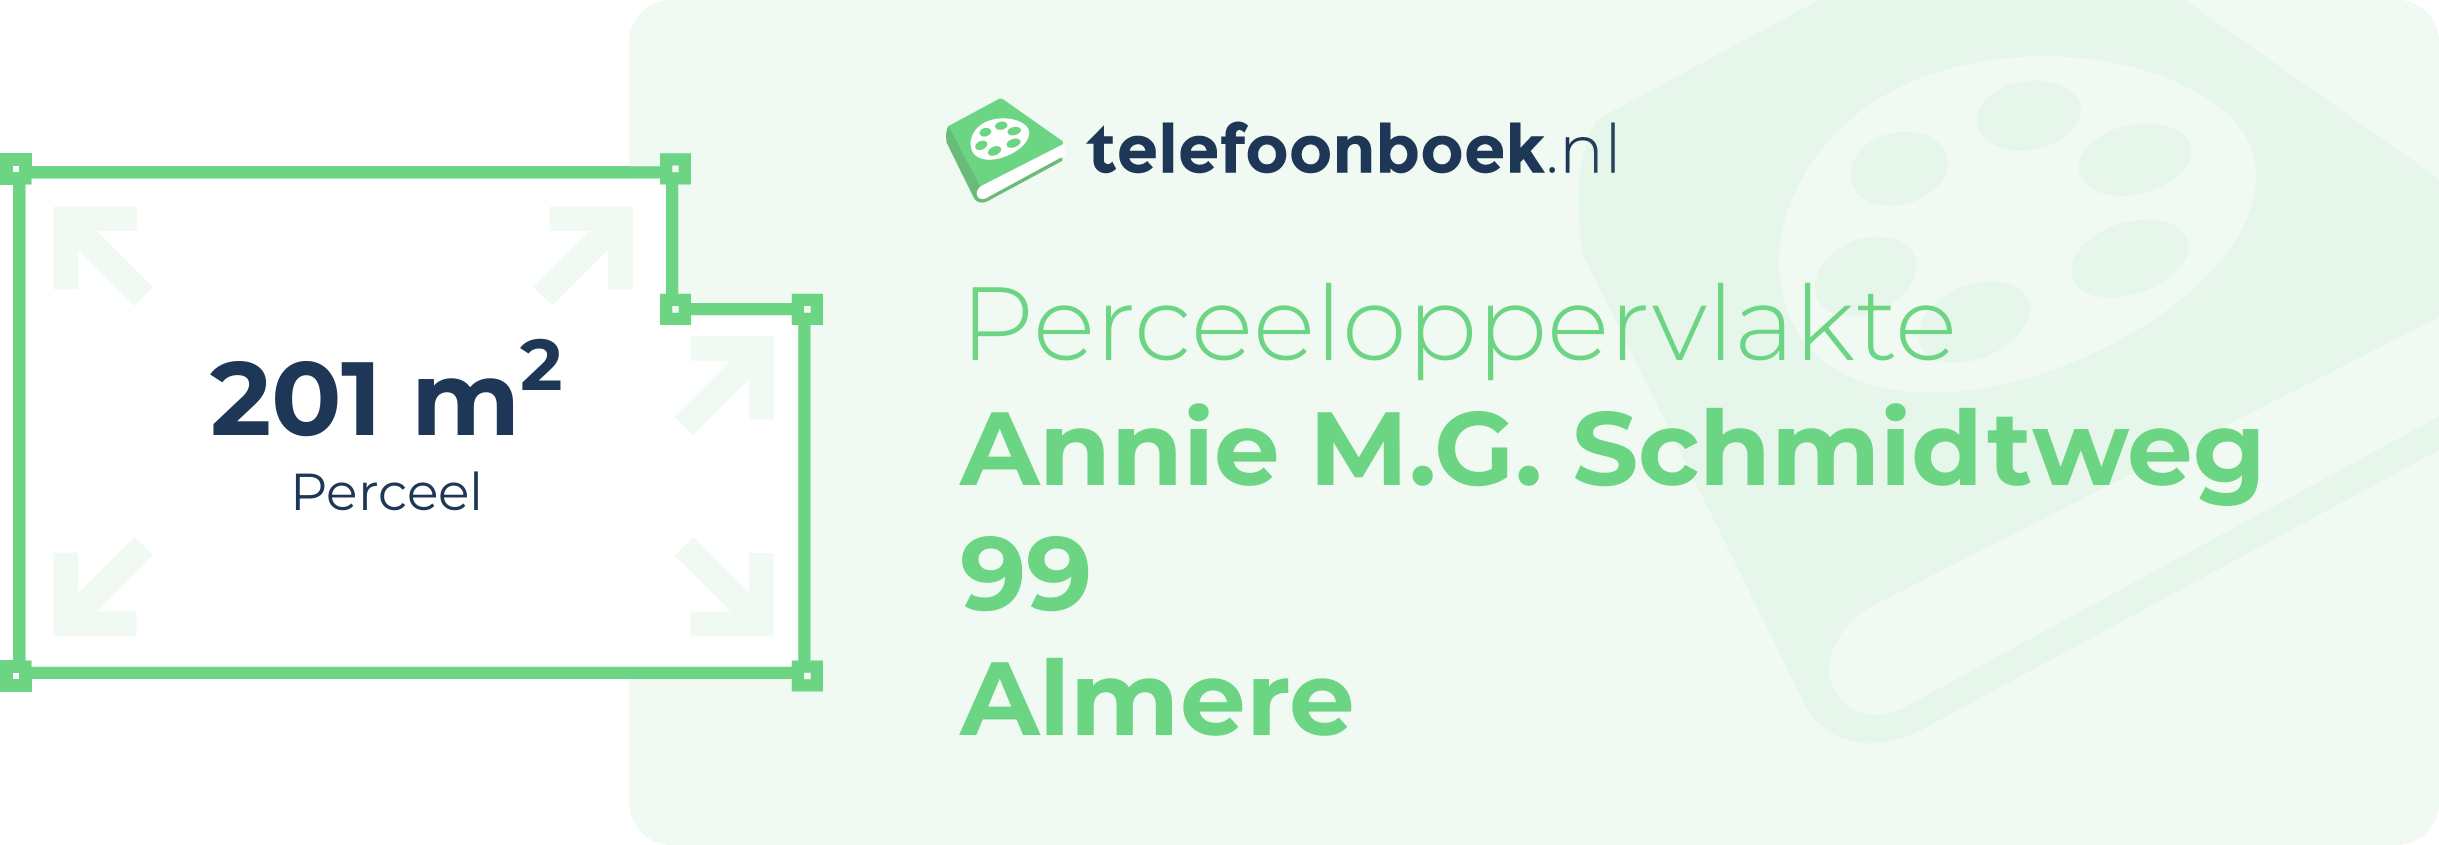 Perceeloppervlakte Annie M.G. Schmidtweg 99 Almere